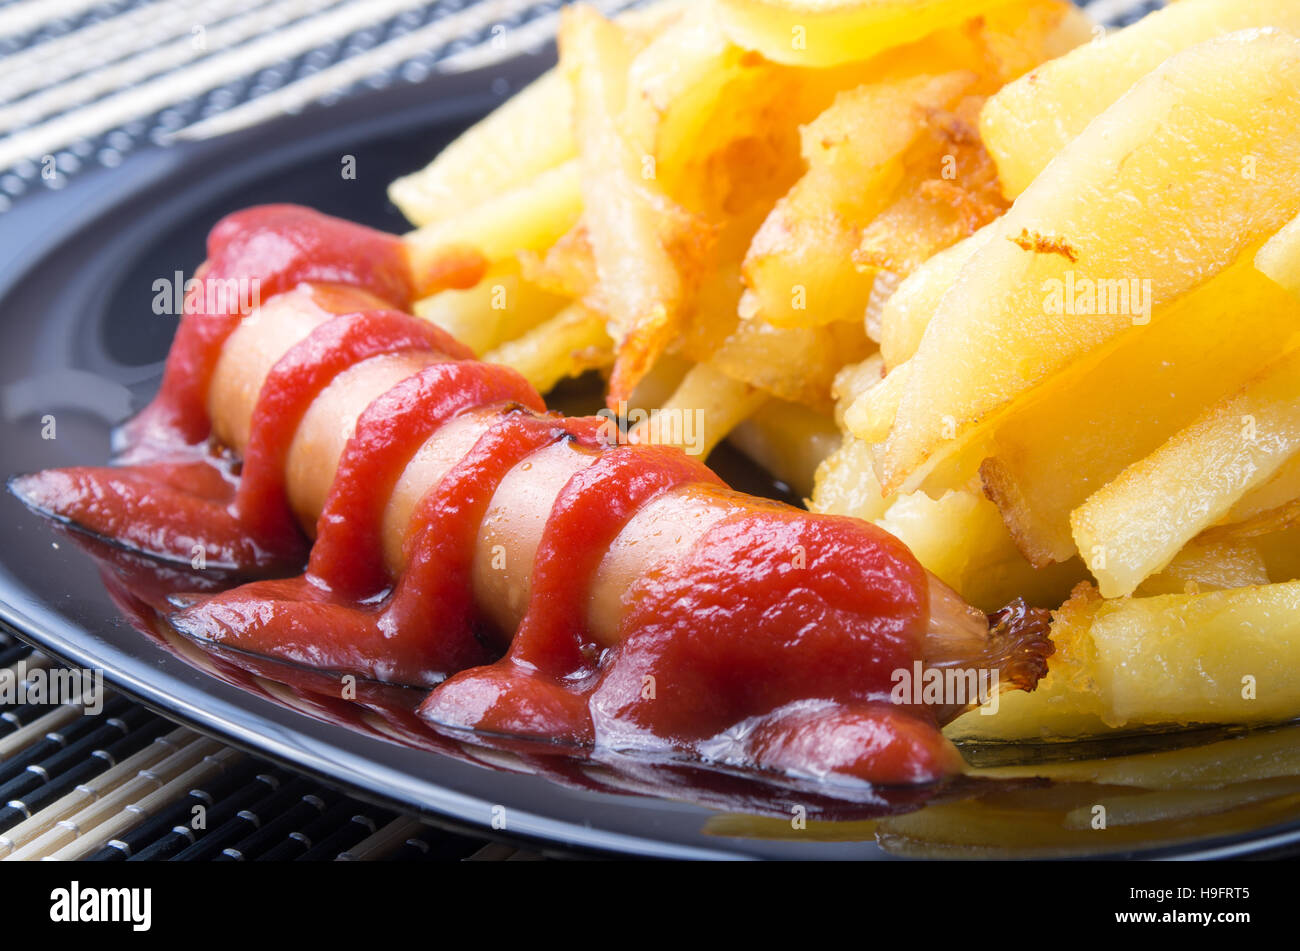 Detalle de una placa negra con salchichas a la parrilla con salsa de tomate y patatas fritas closeup Foto de stock